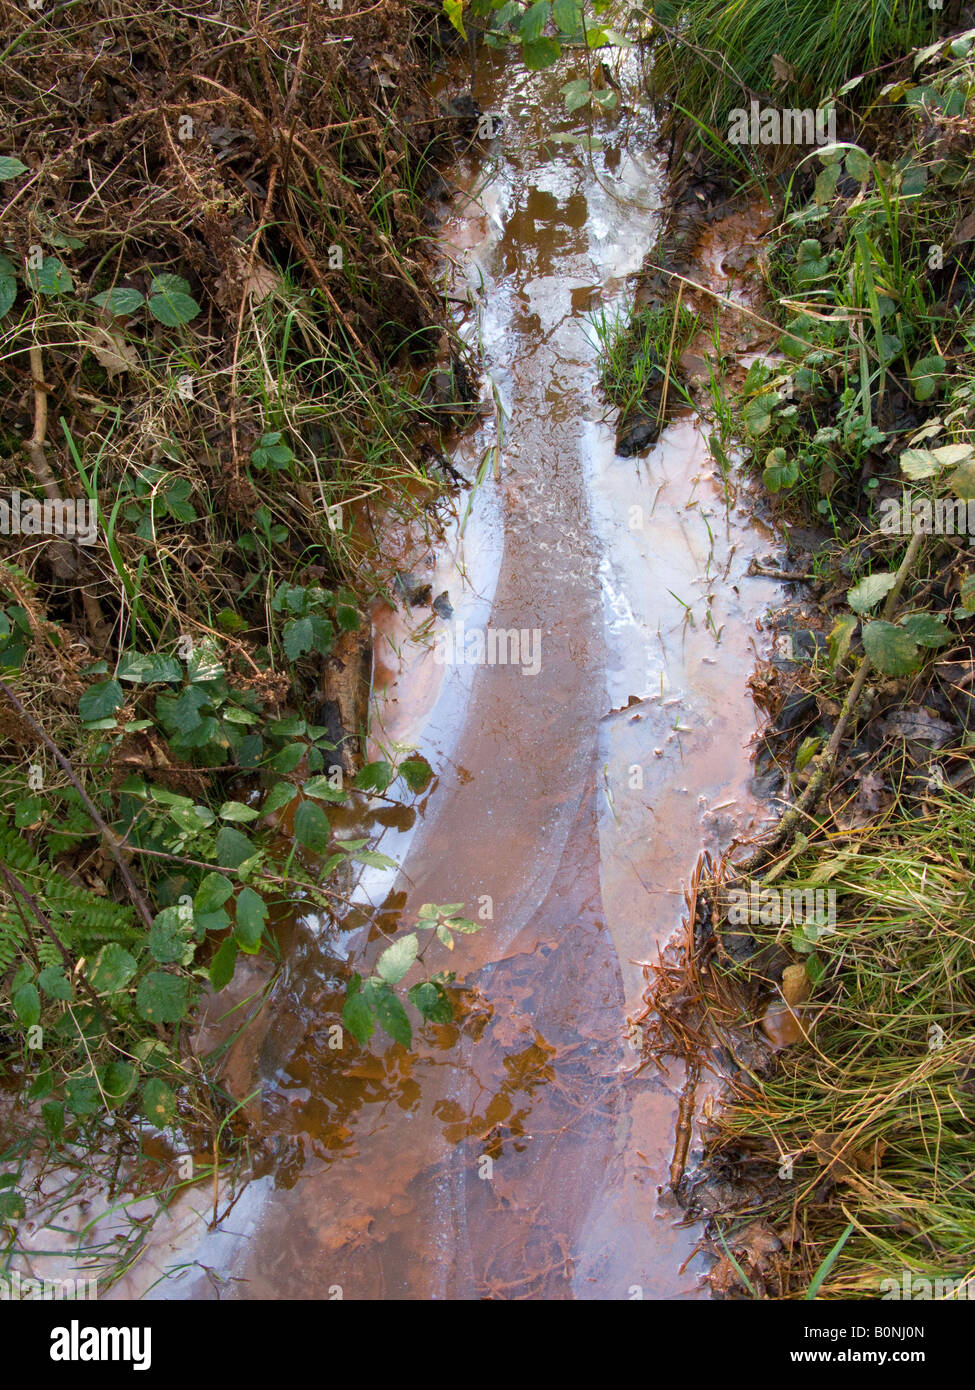 Piscine d'eau / étang / flux lent de flux contaminé pollué par contamination de surface / huile flottante ou graisse. West End Common, près d'Esher, Surrey. ROYAUME-UNI. Banque D'Images